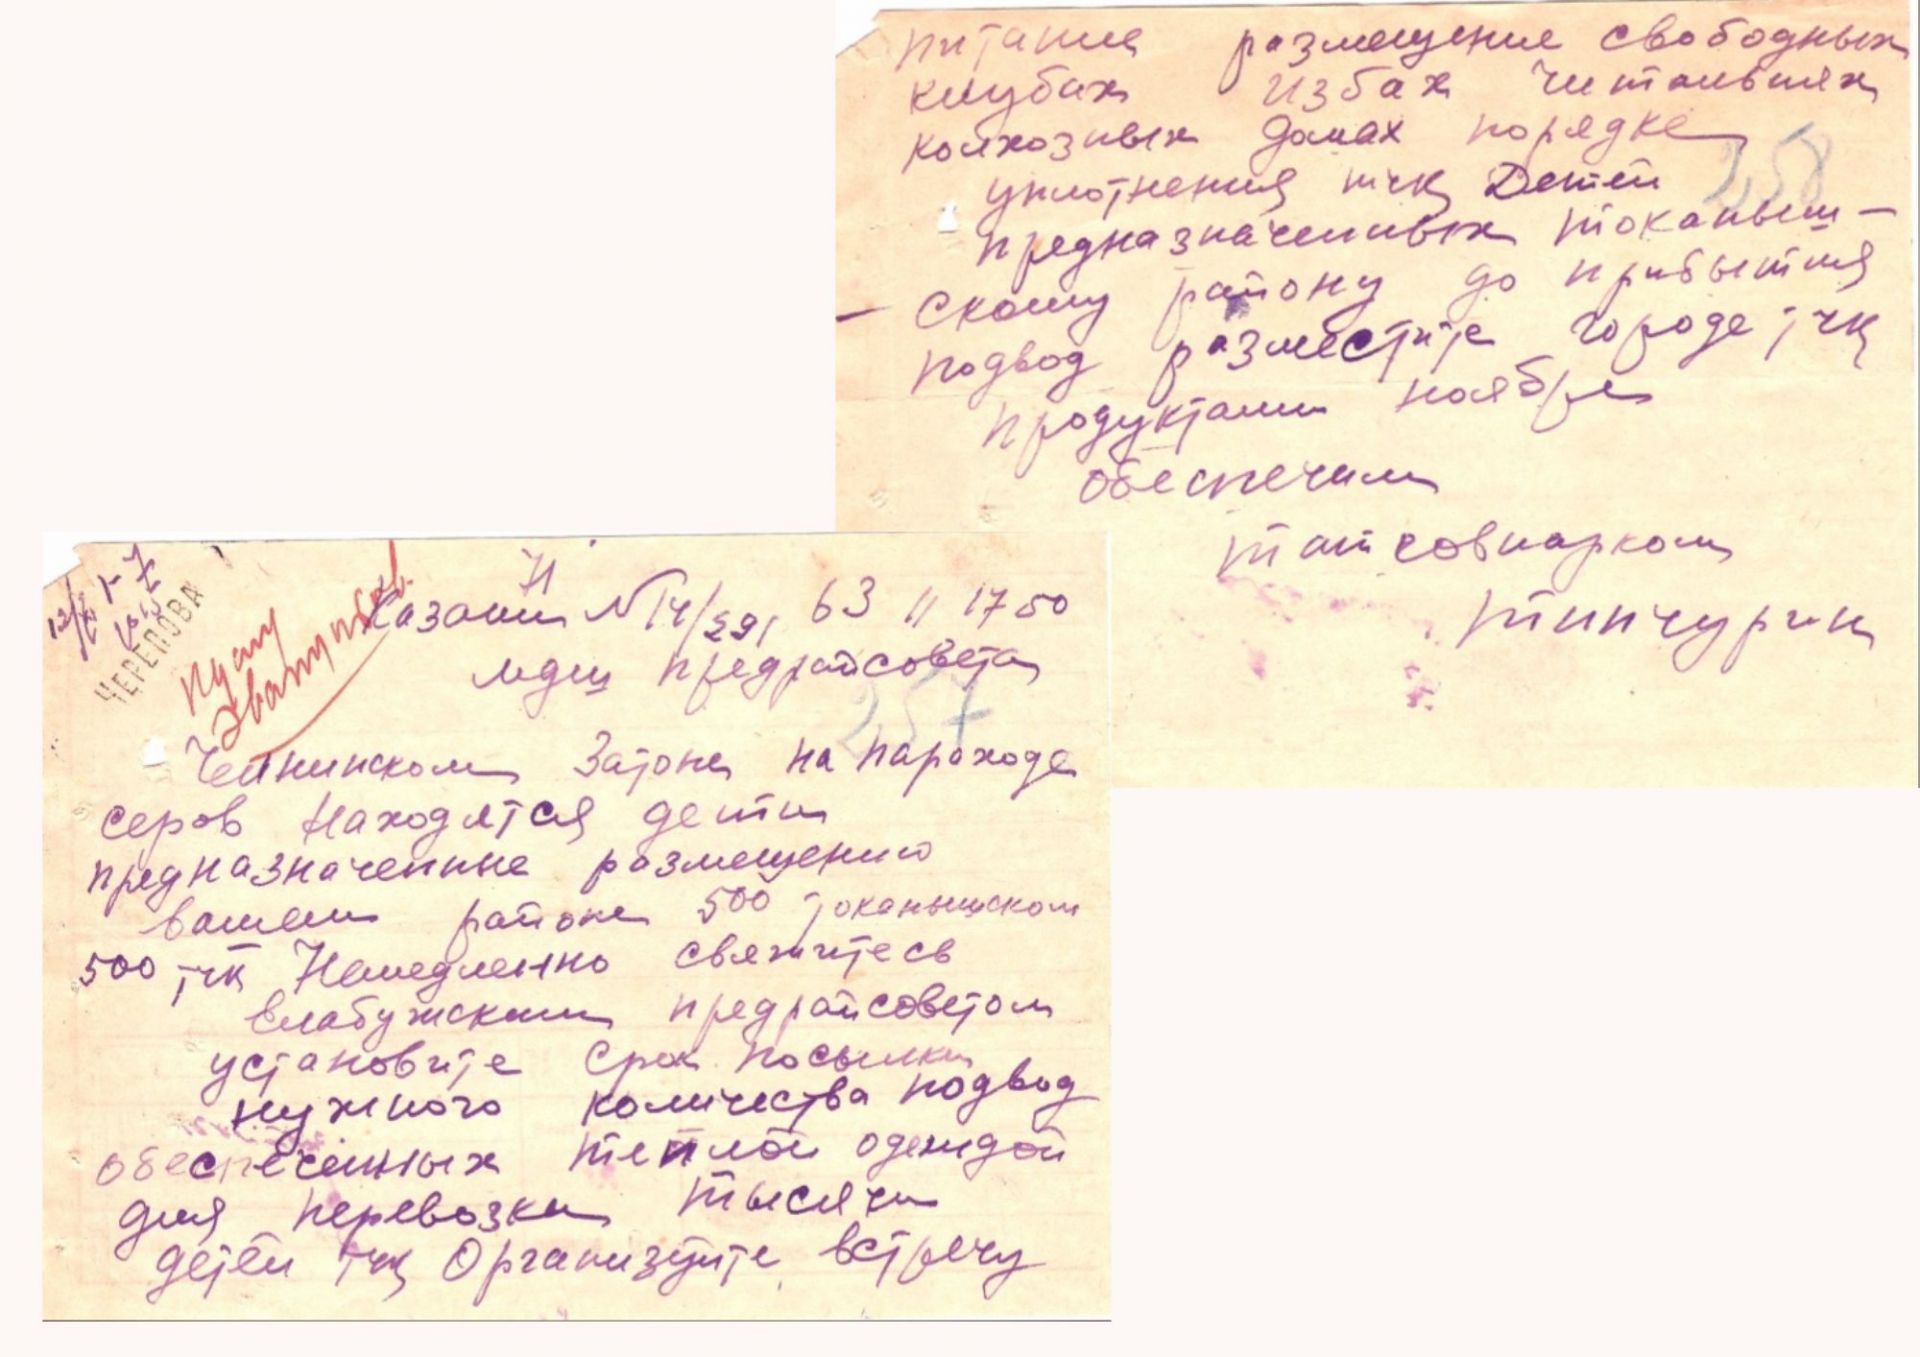 Мамадышский архив обнародовал документы и телеграммы времен Великой Отечественной войны